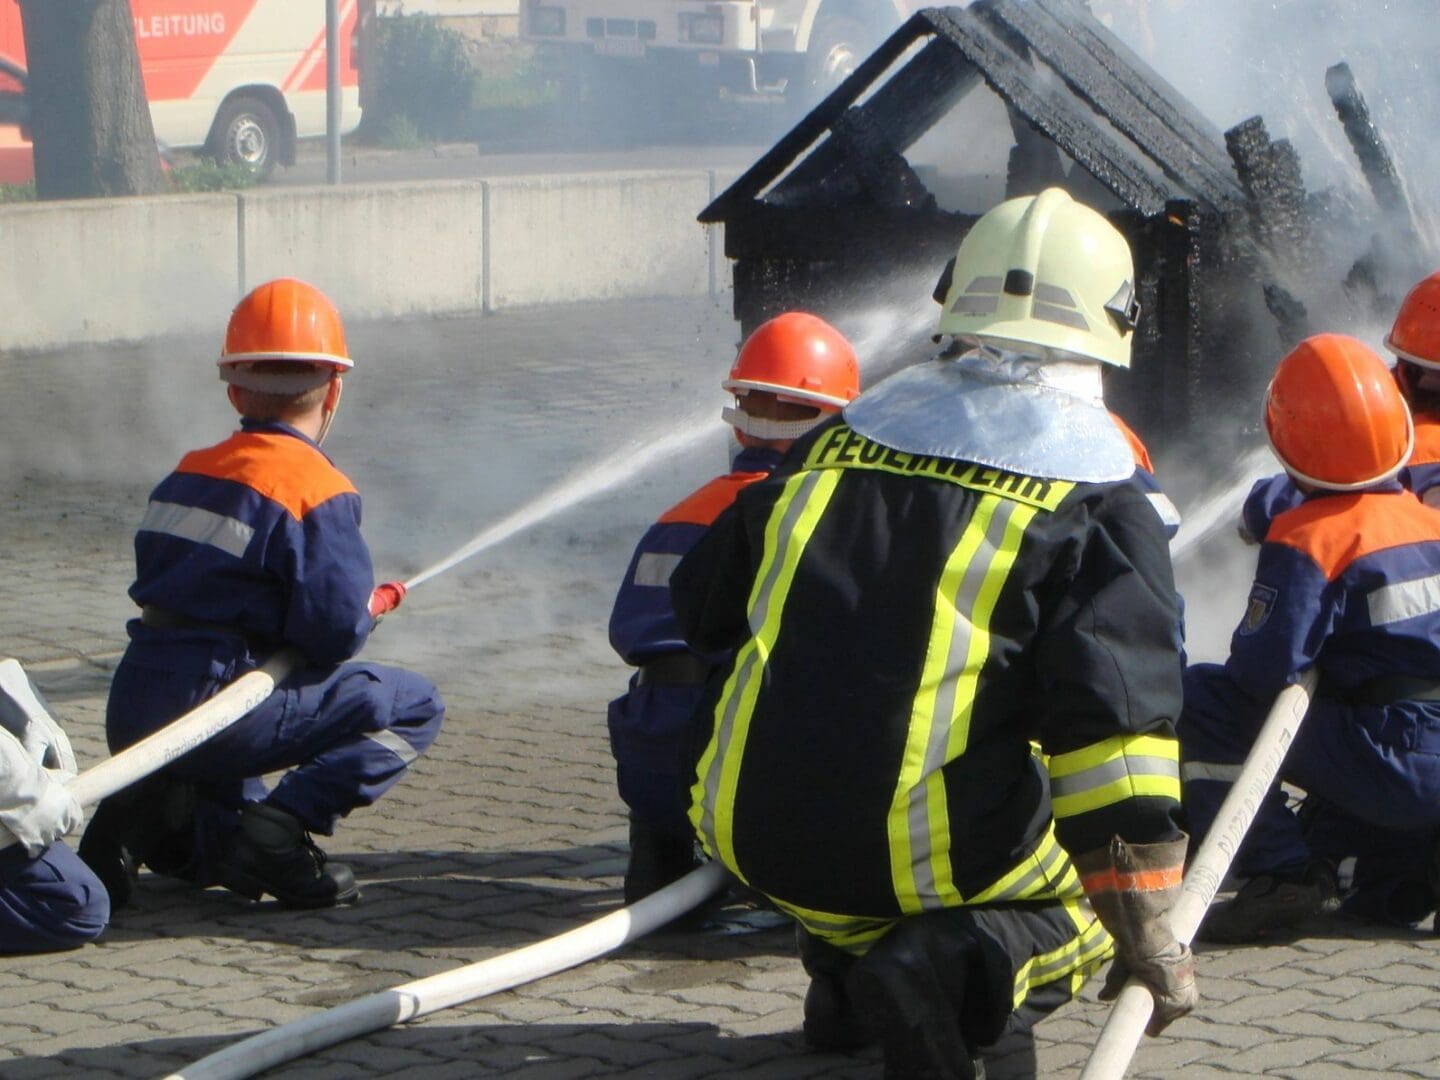 Firemen extinguishing a fire